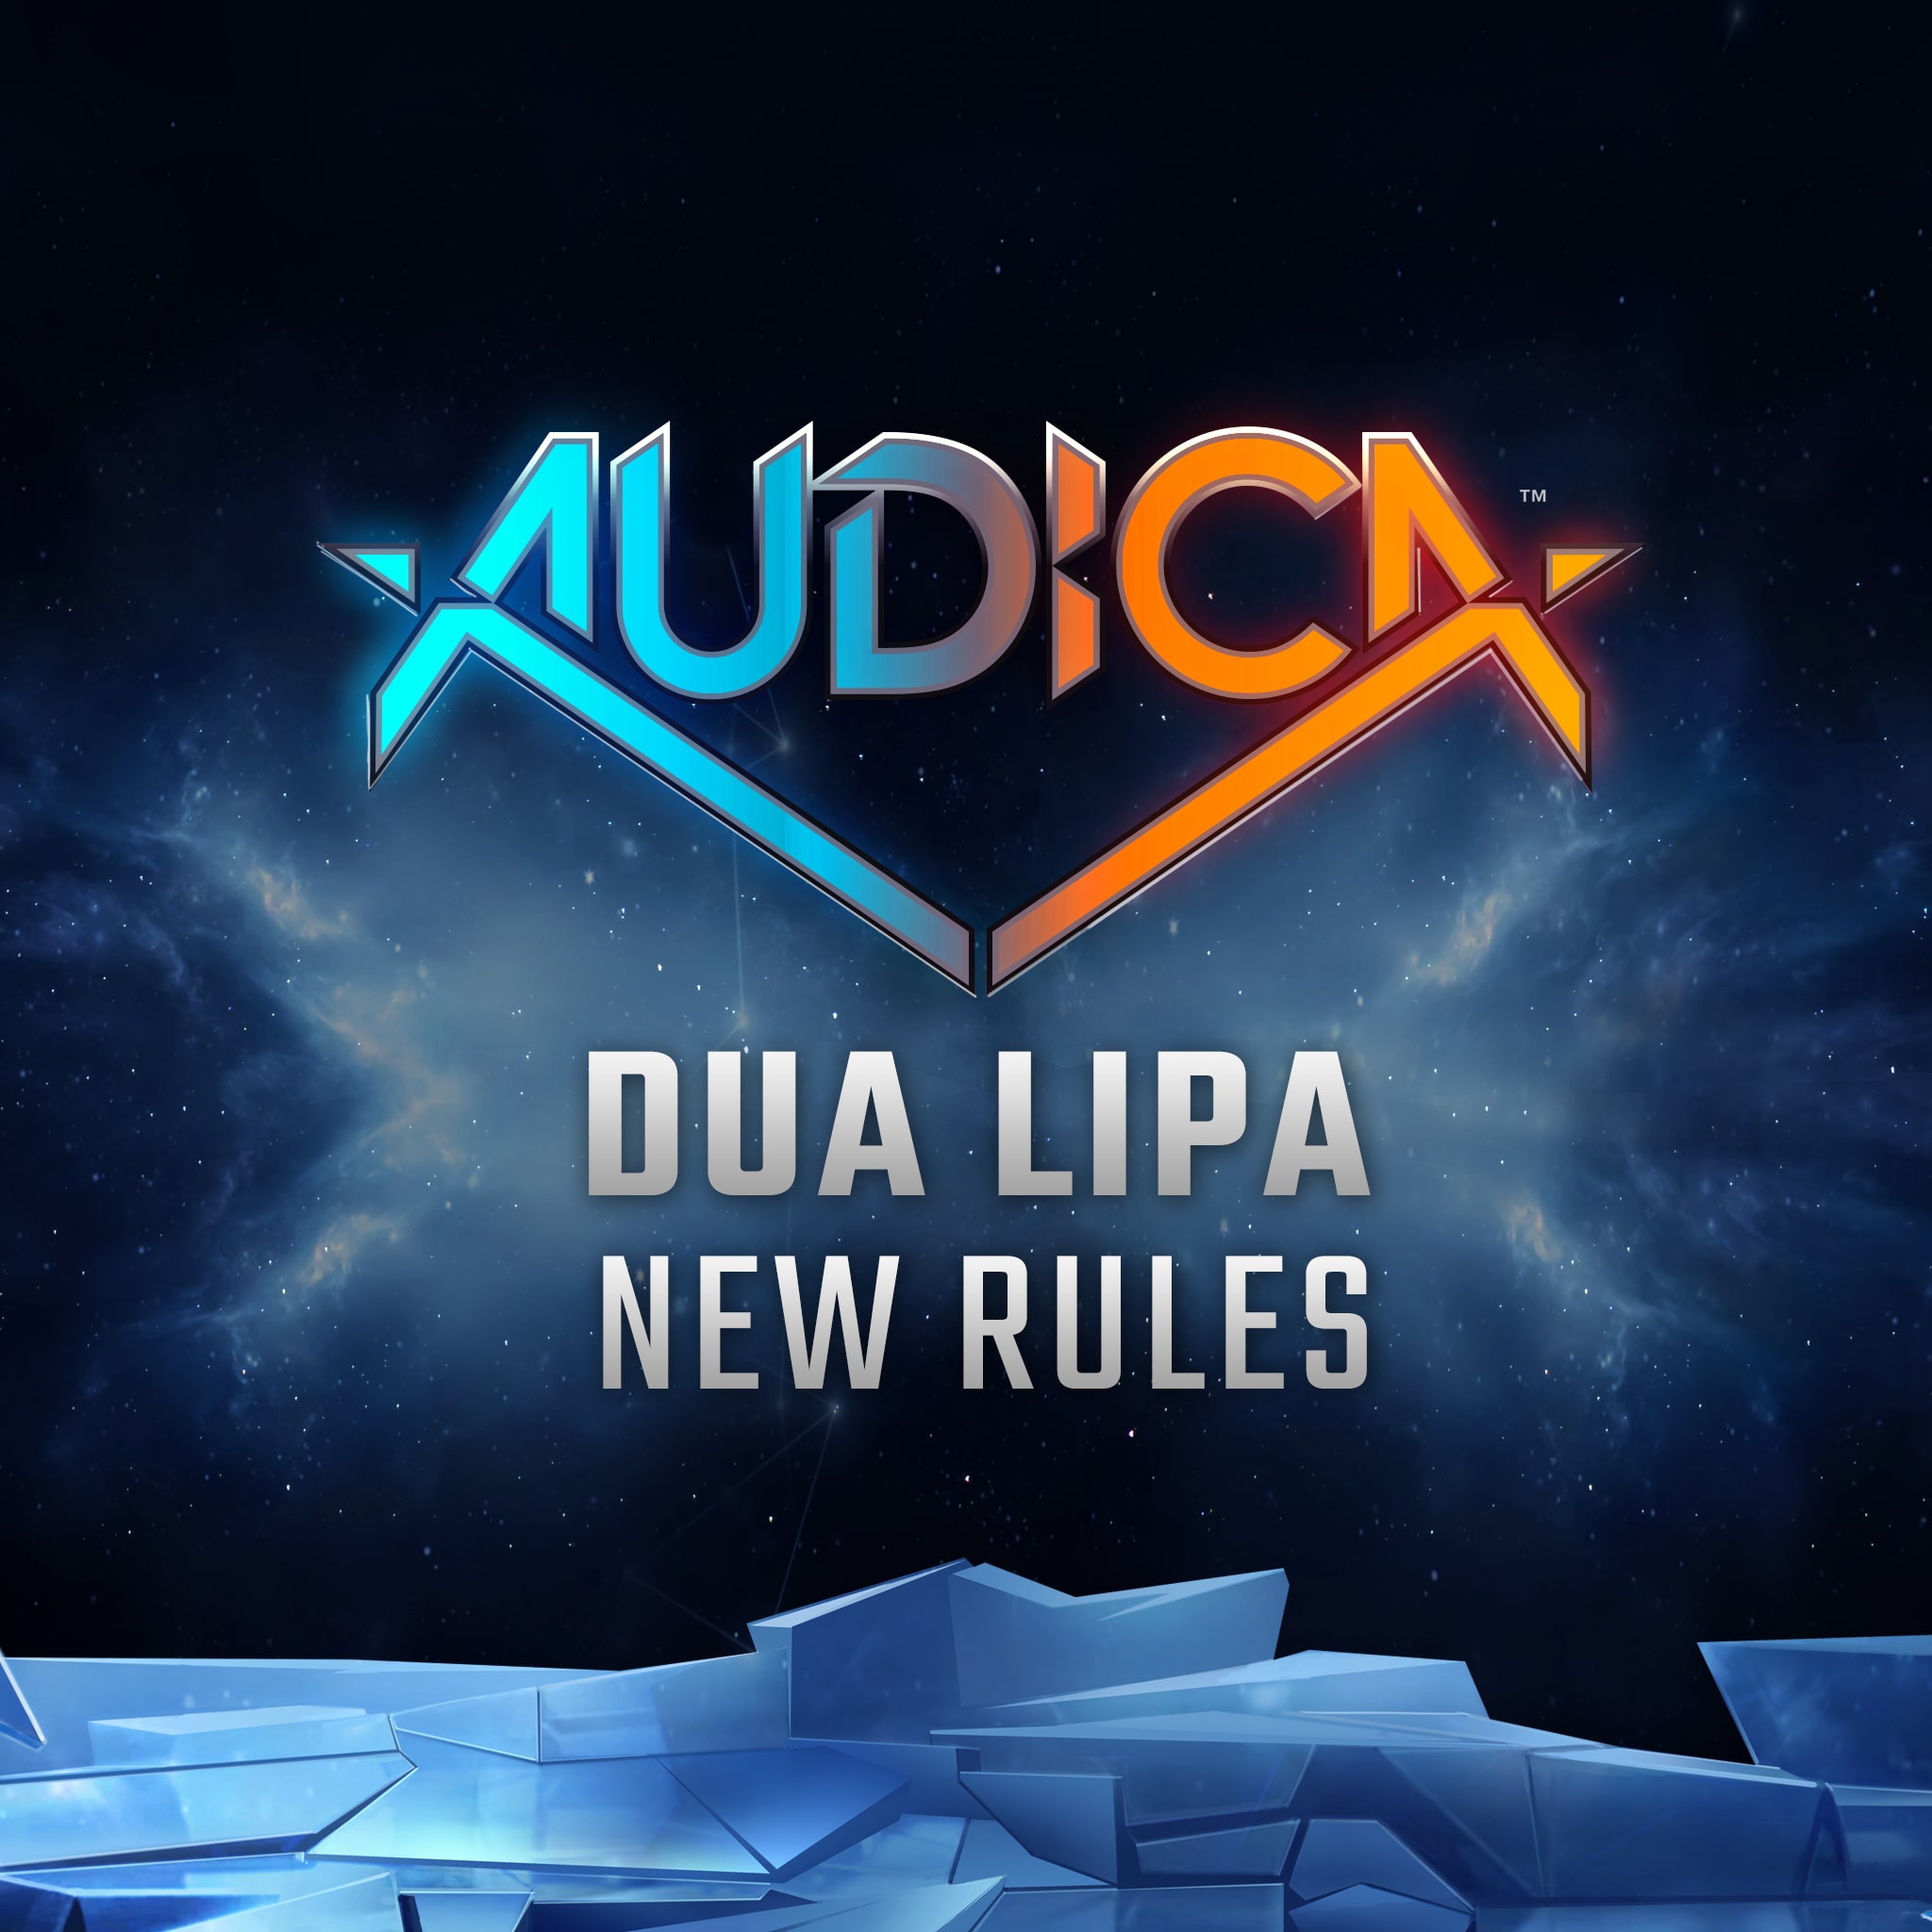 'New Rules' -Dua Lipa